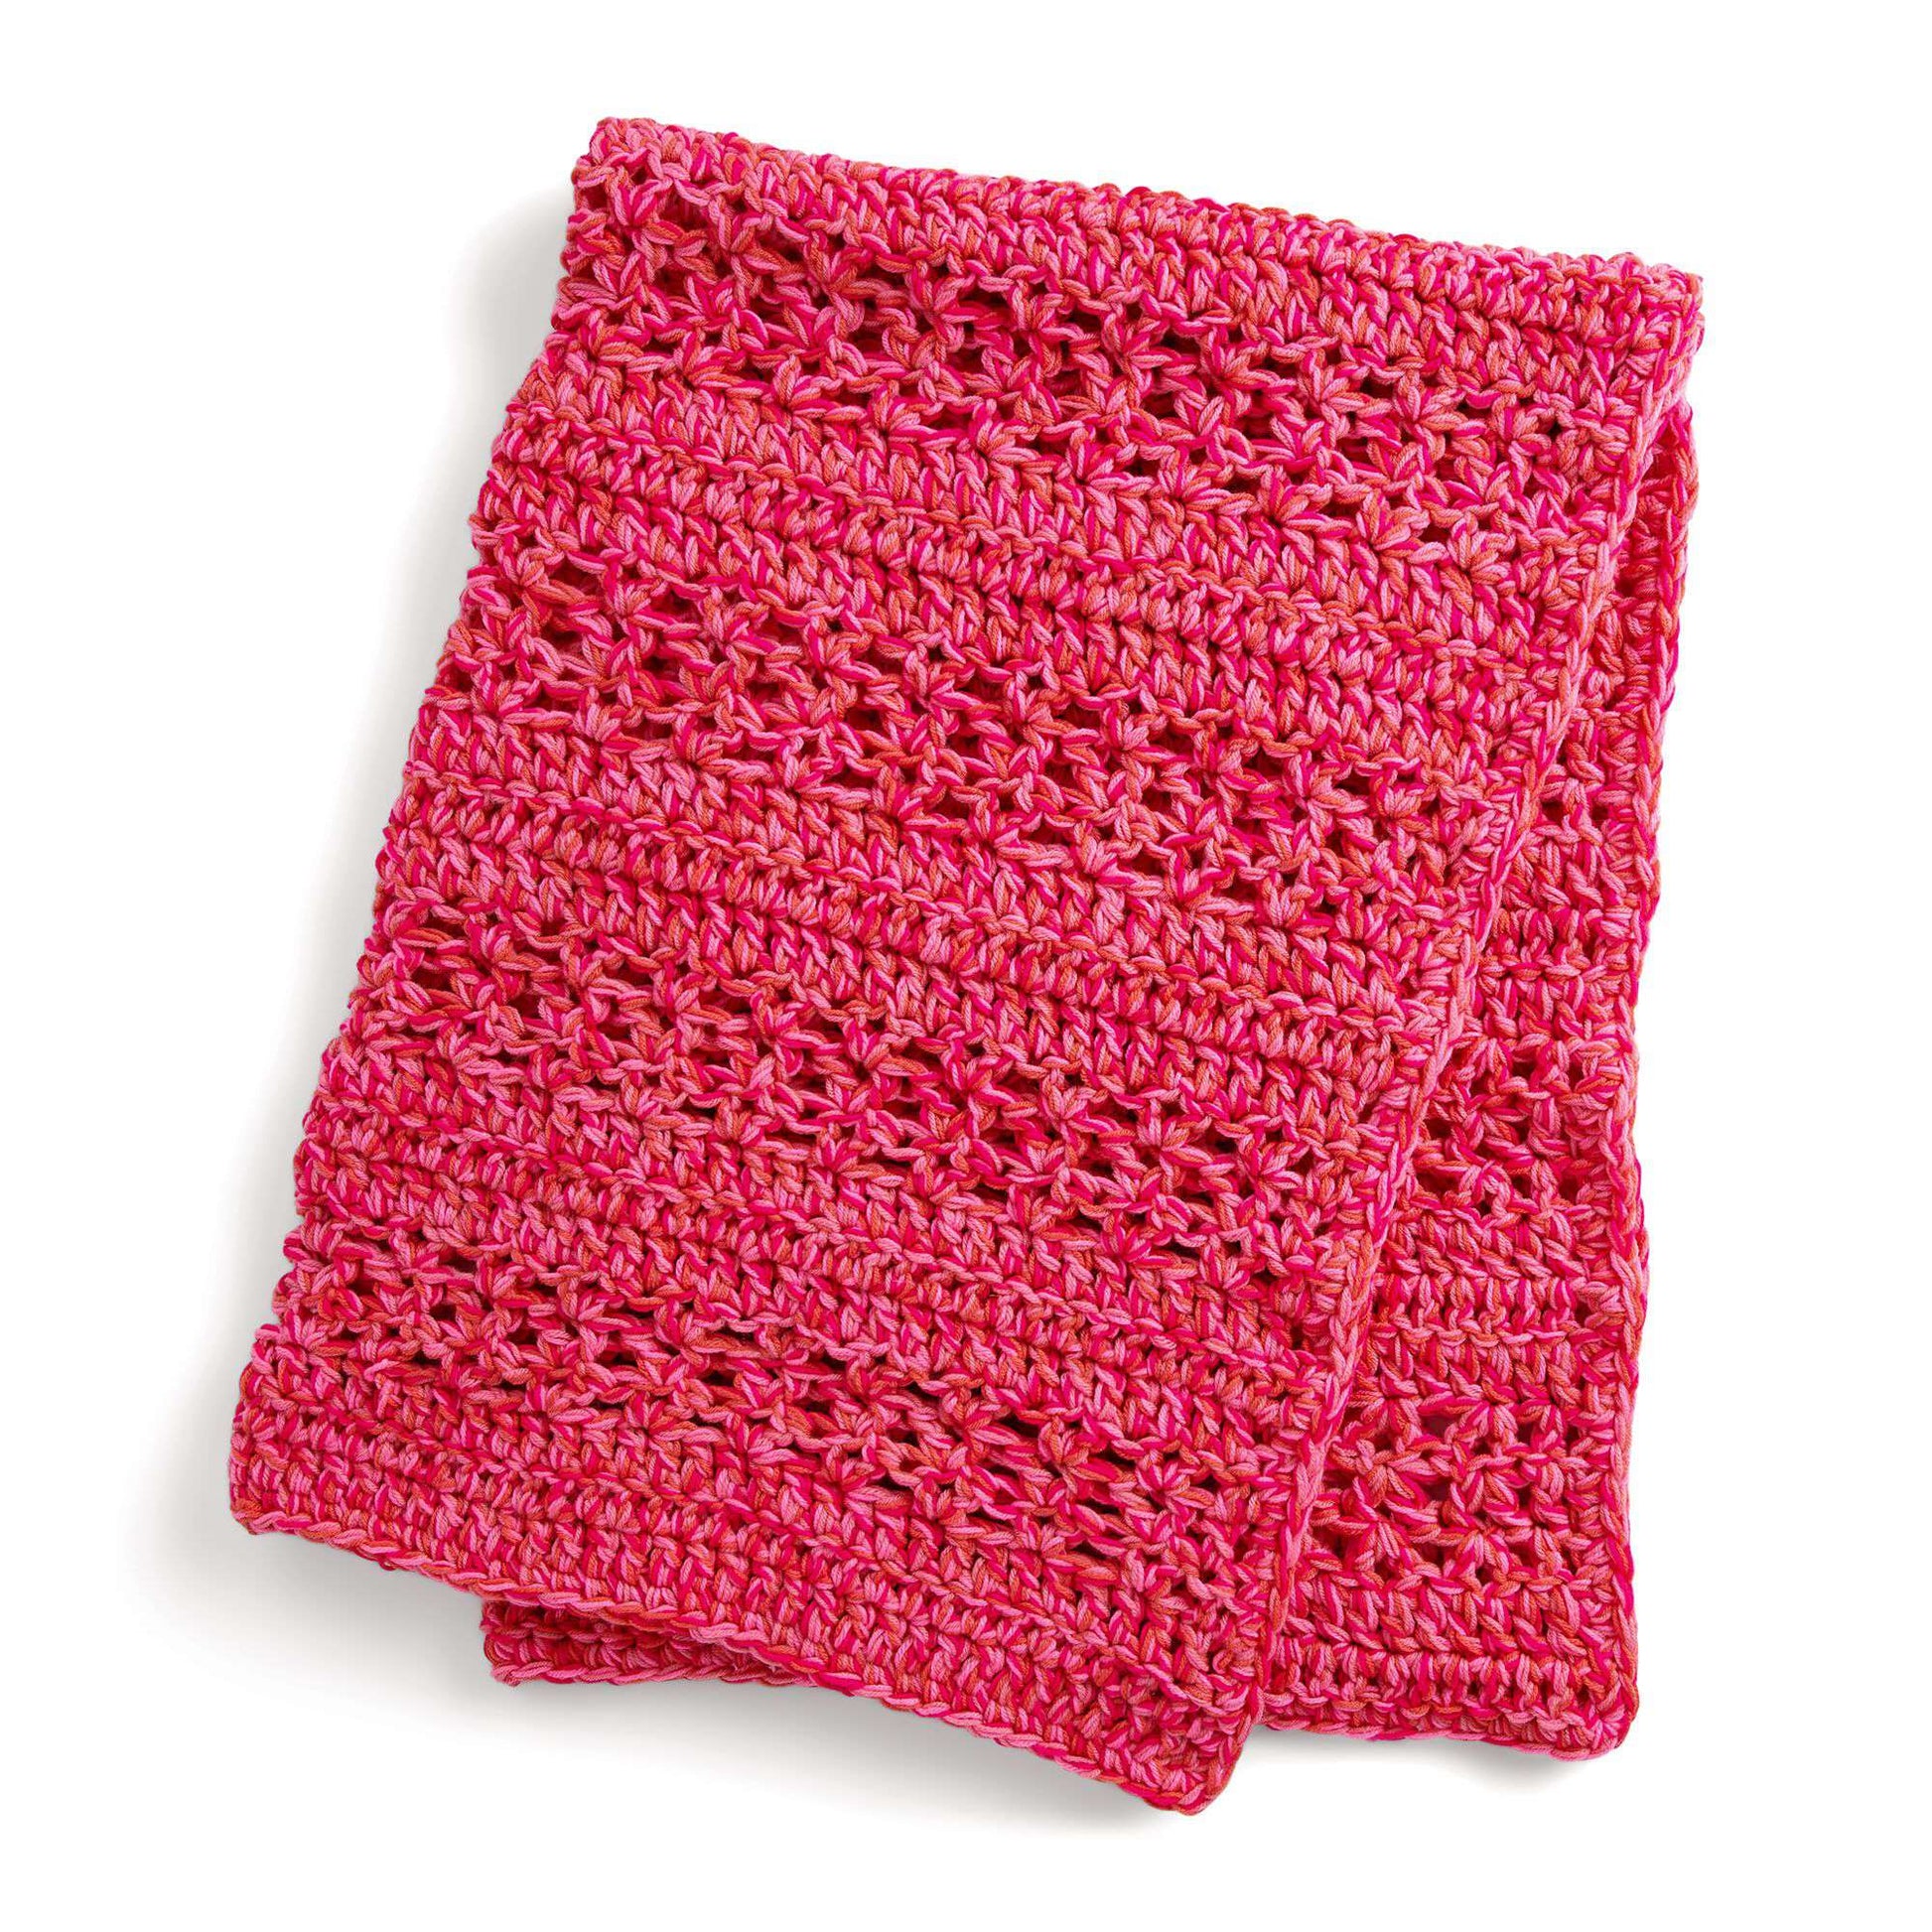 Free Red Heart Weekend Speedy Crochet Throw Pattern